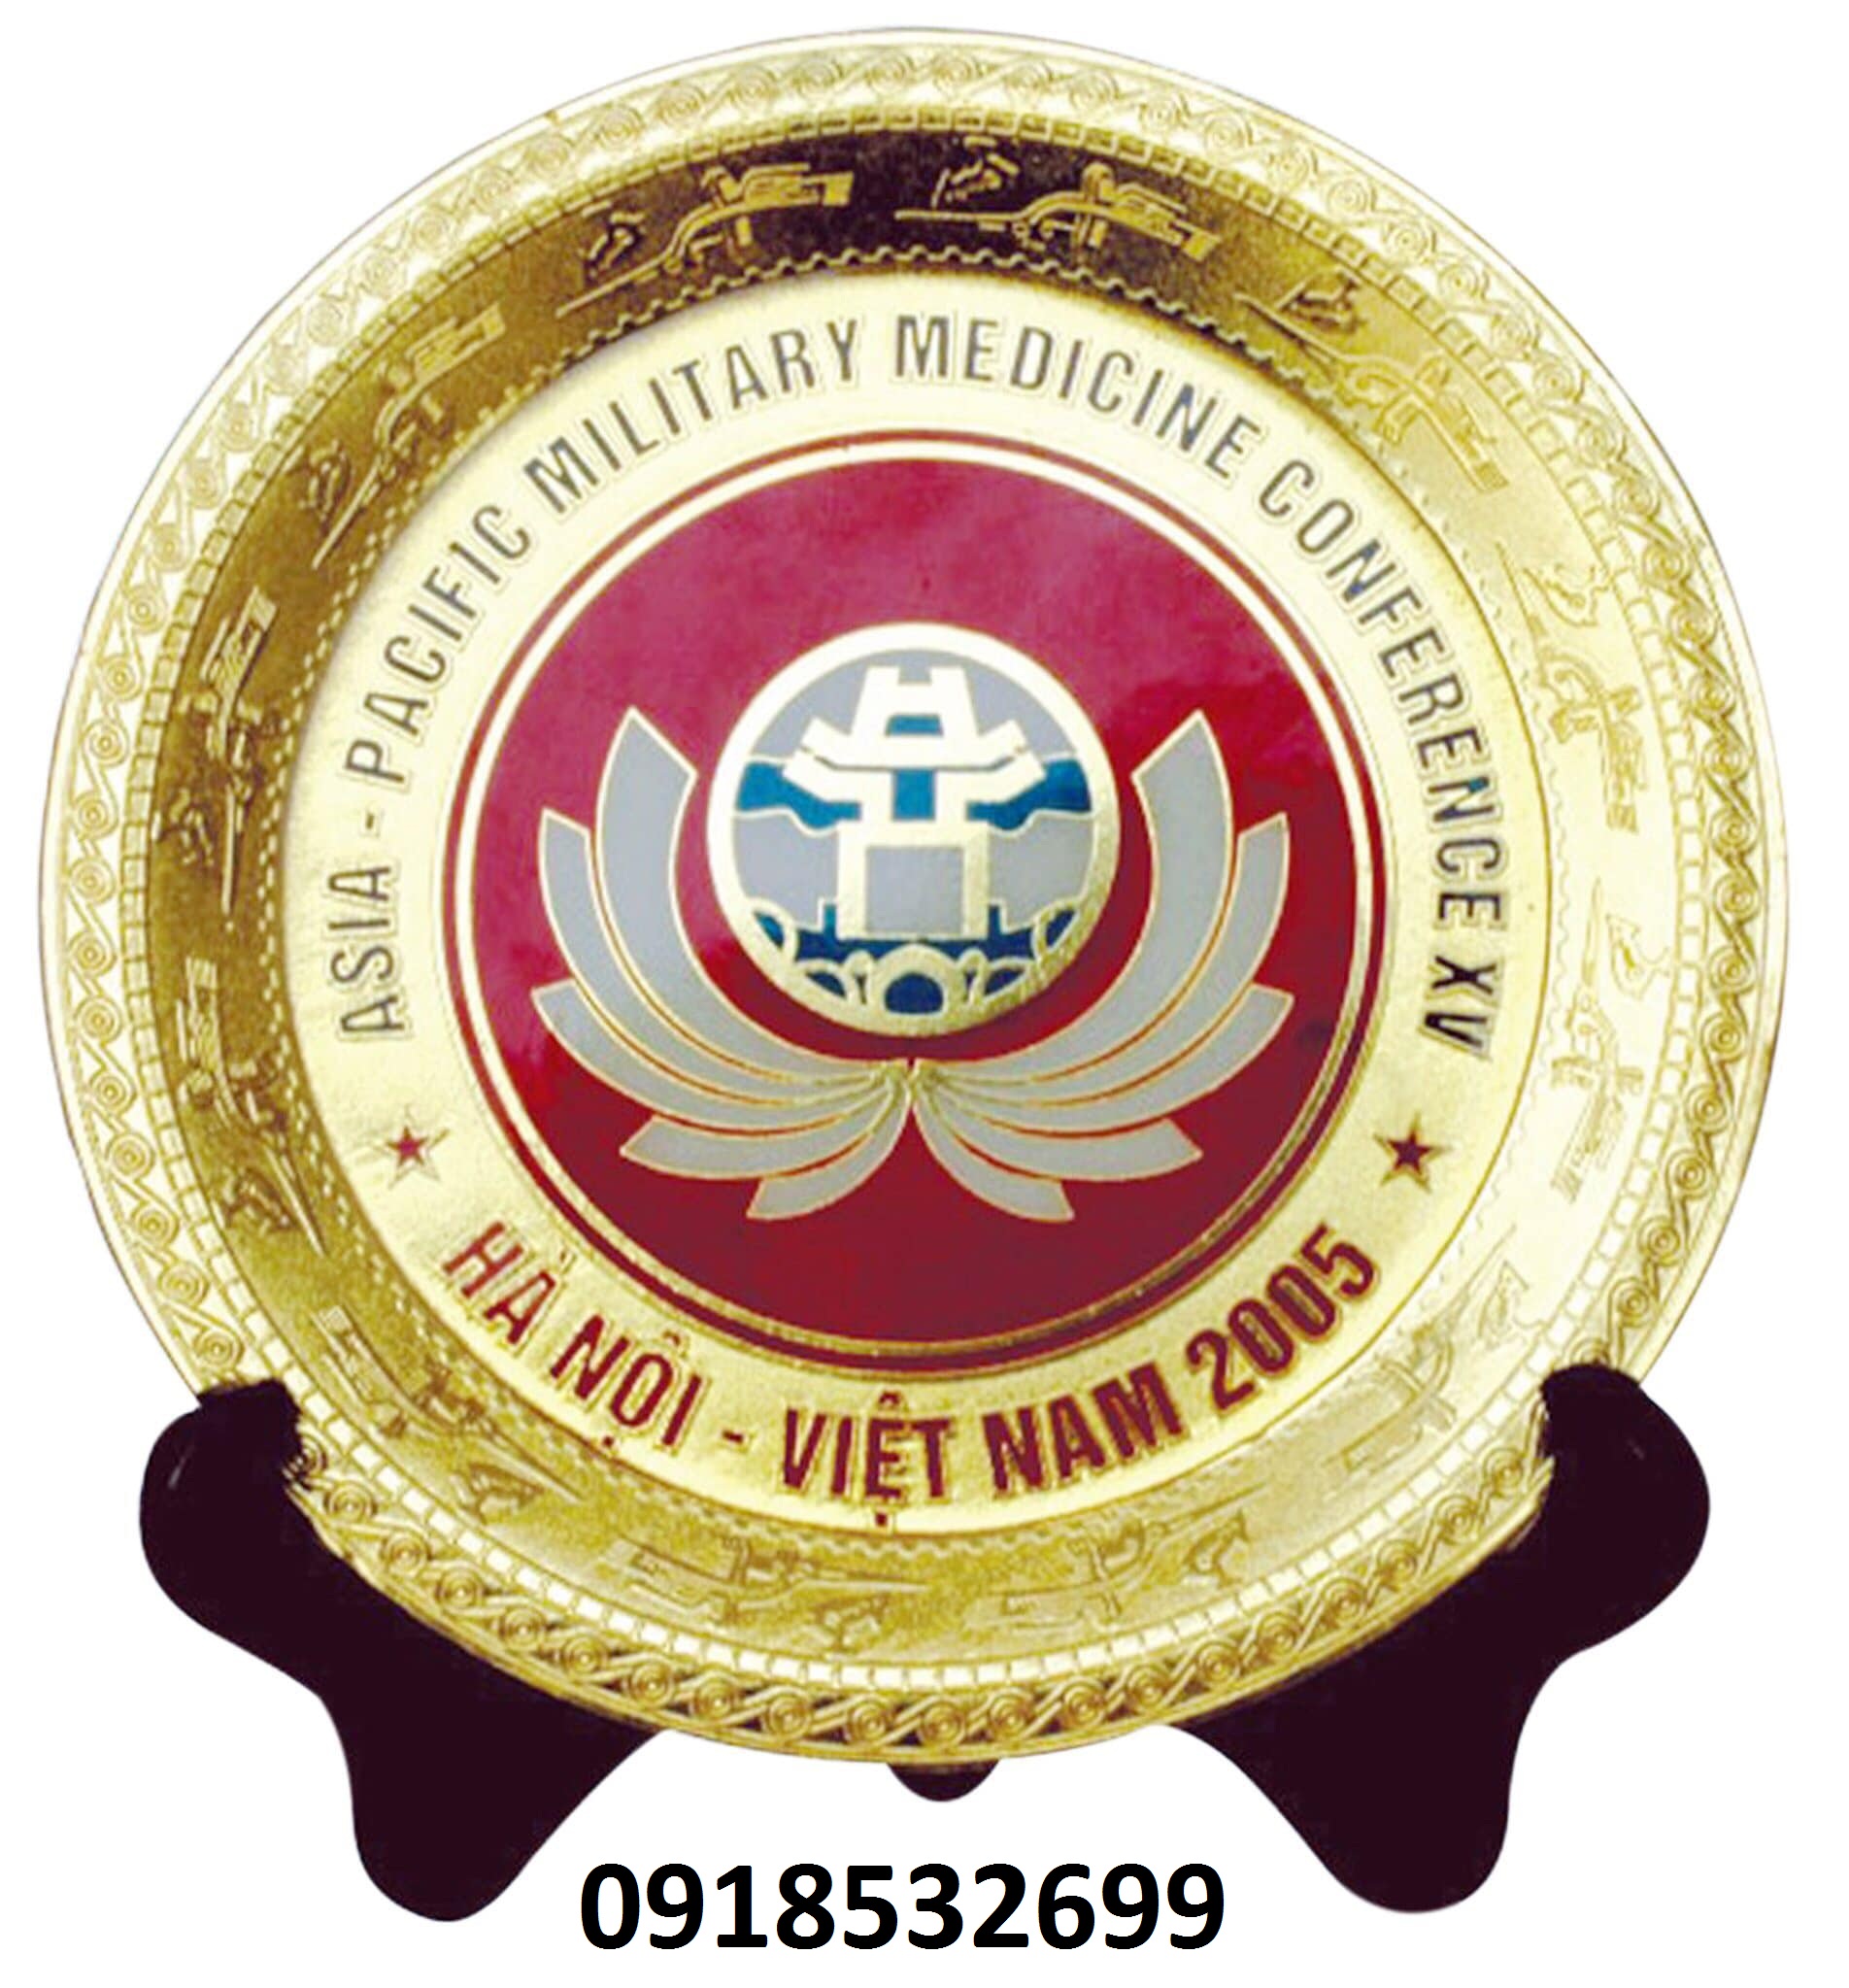 Kỷ niệm chương, quà tặng, logo 